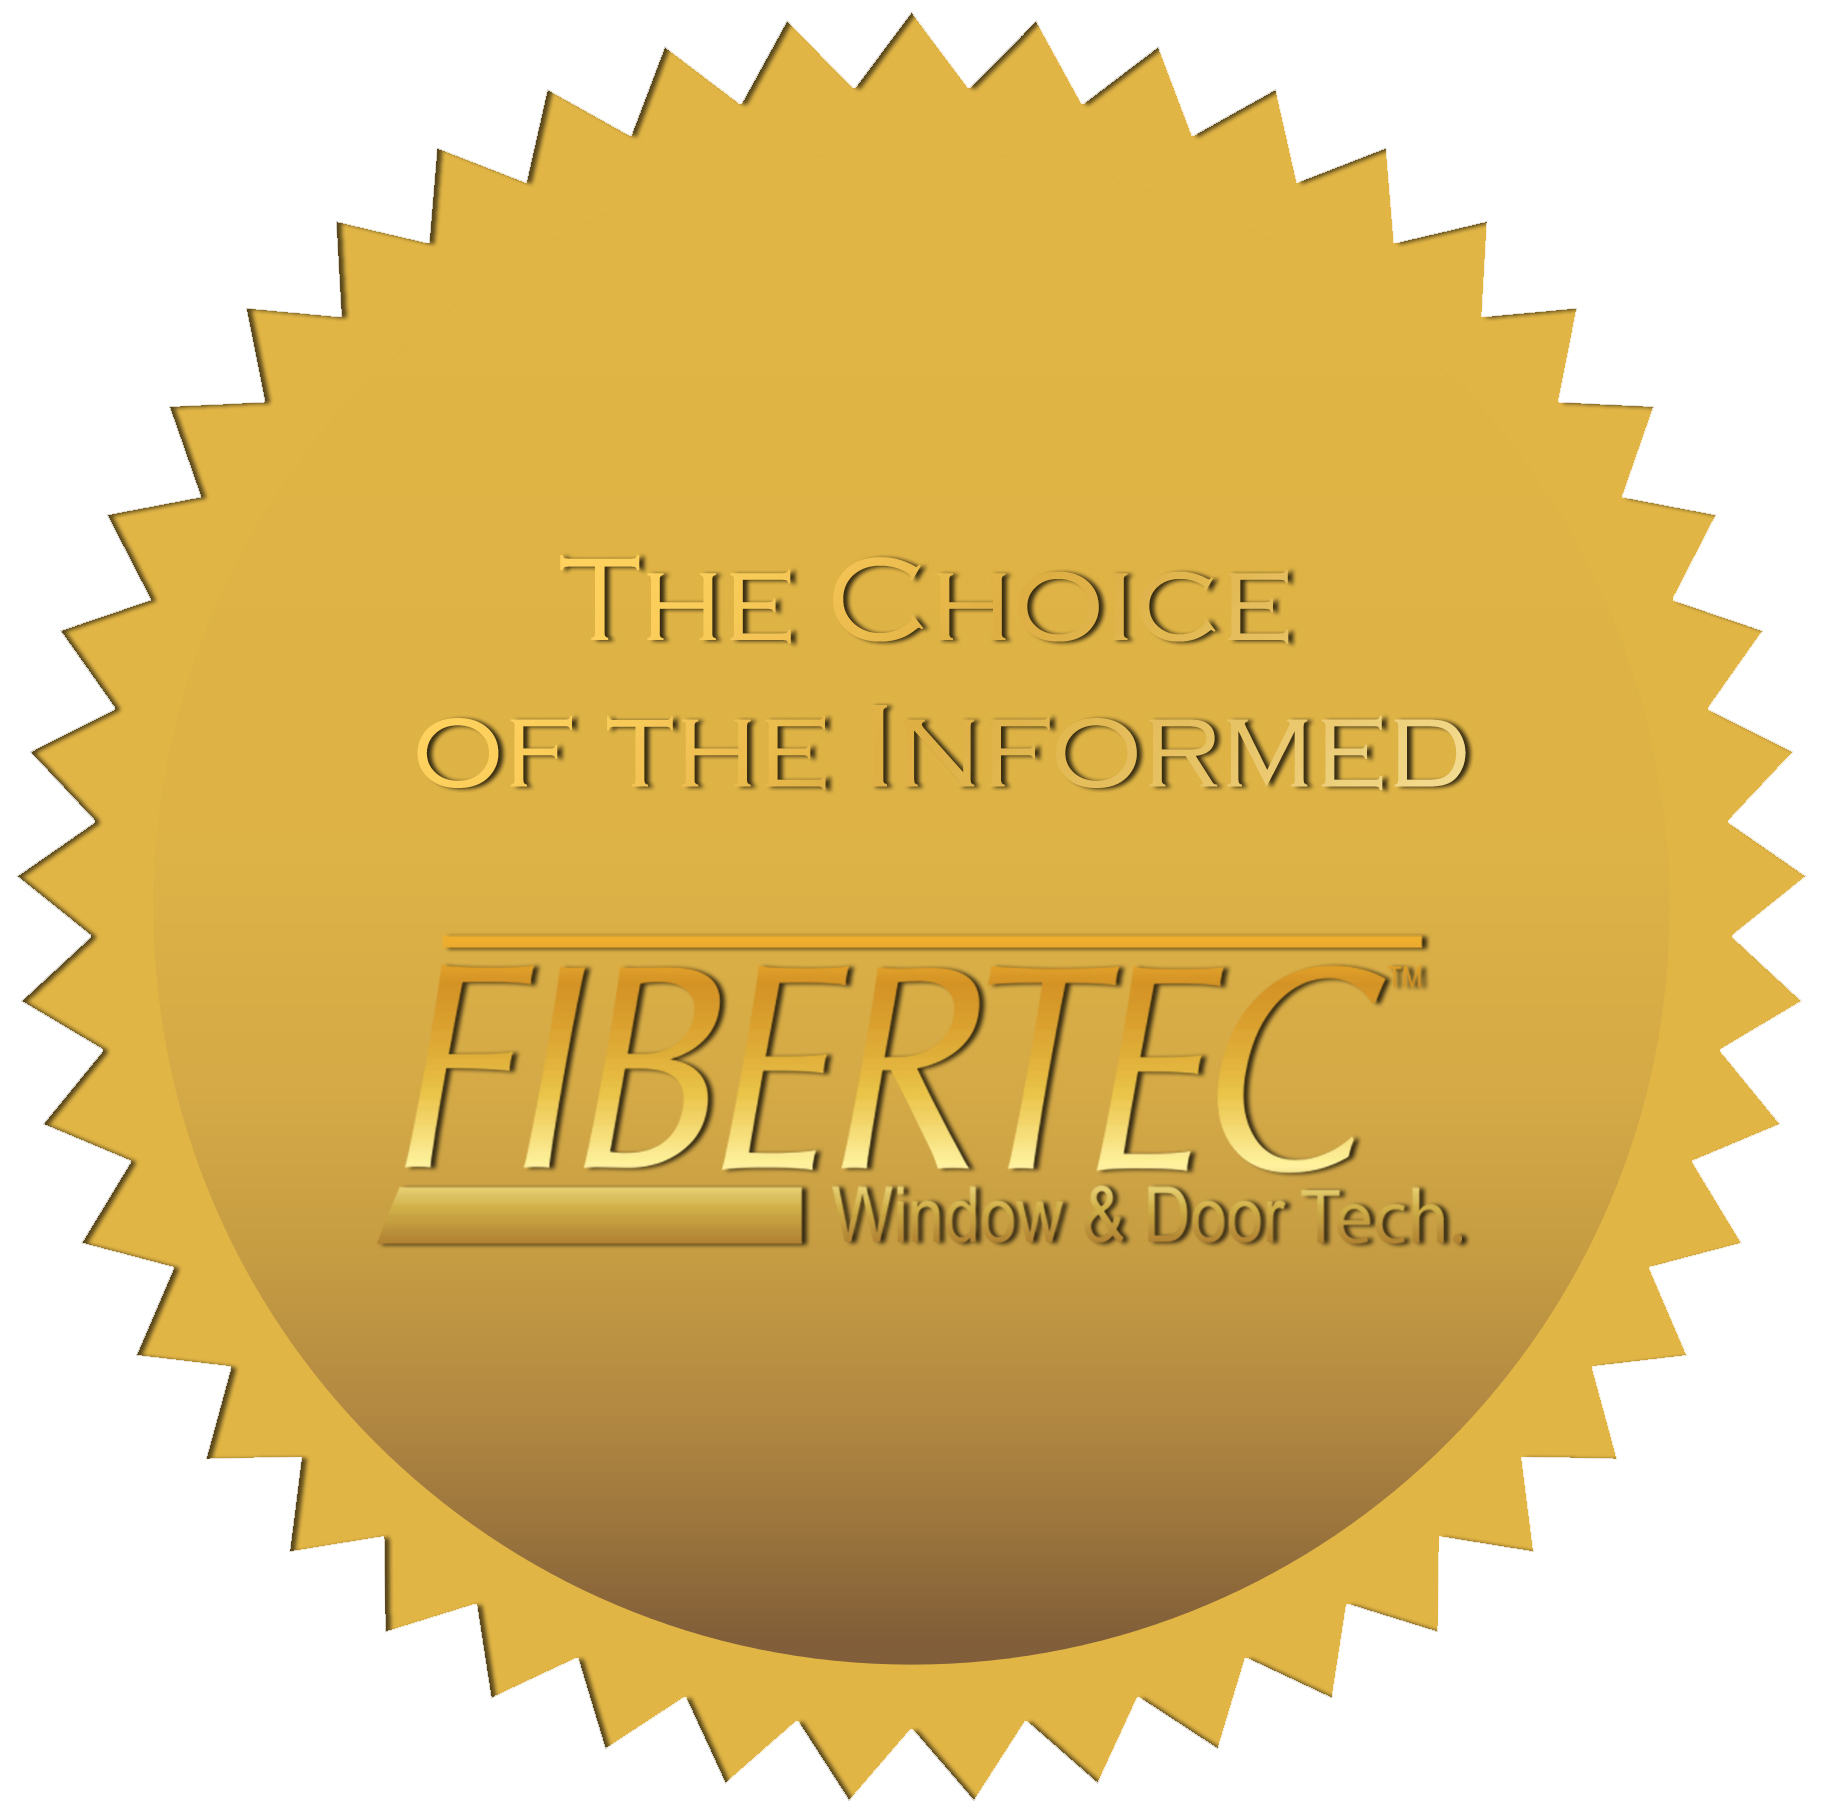 Fibertec Gold Seal